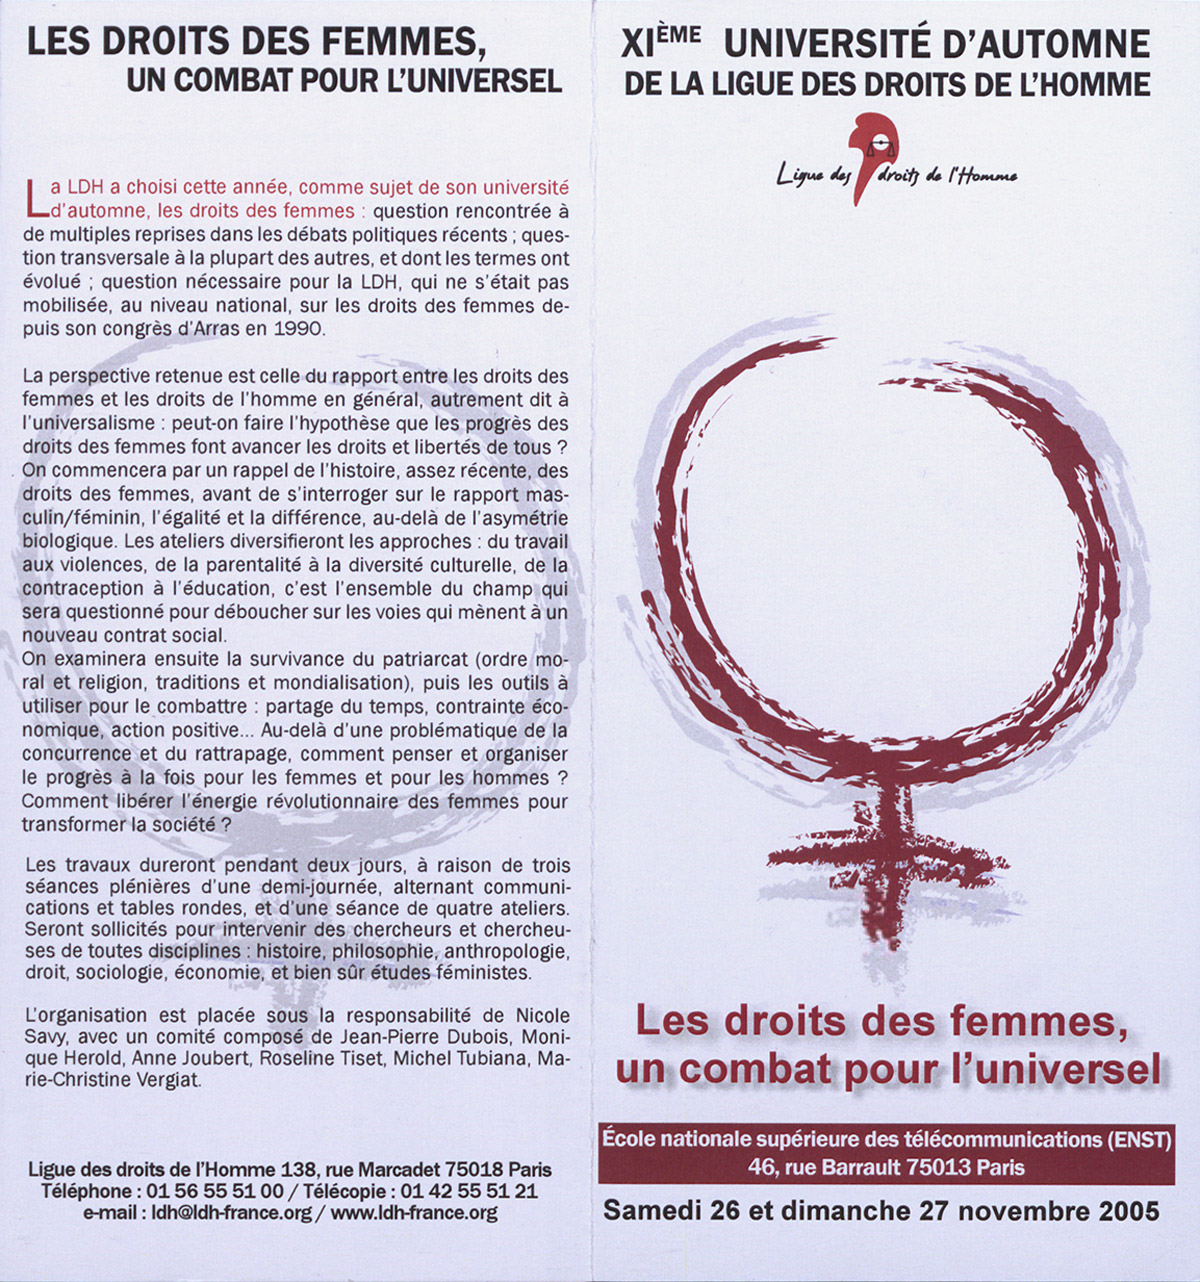 XIème Université d'automne de la Ligue des droits de l'Homme : Les droits des femmes un combat pour l'universel, dépliant, 26 et 27 novembre 2007